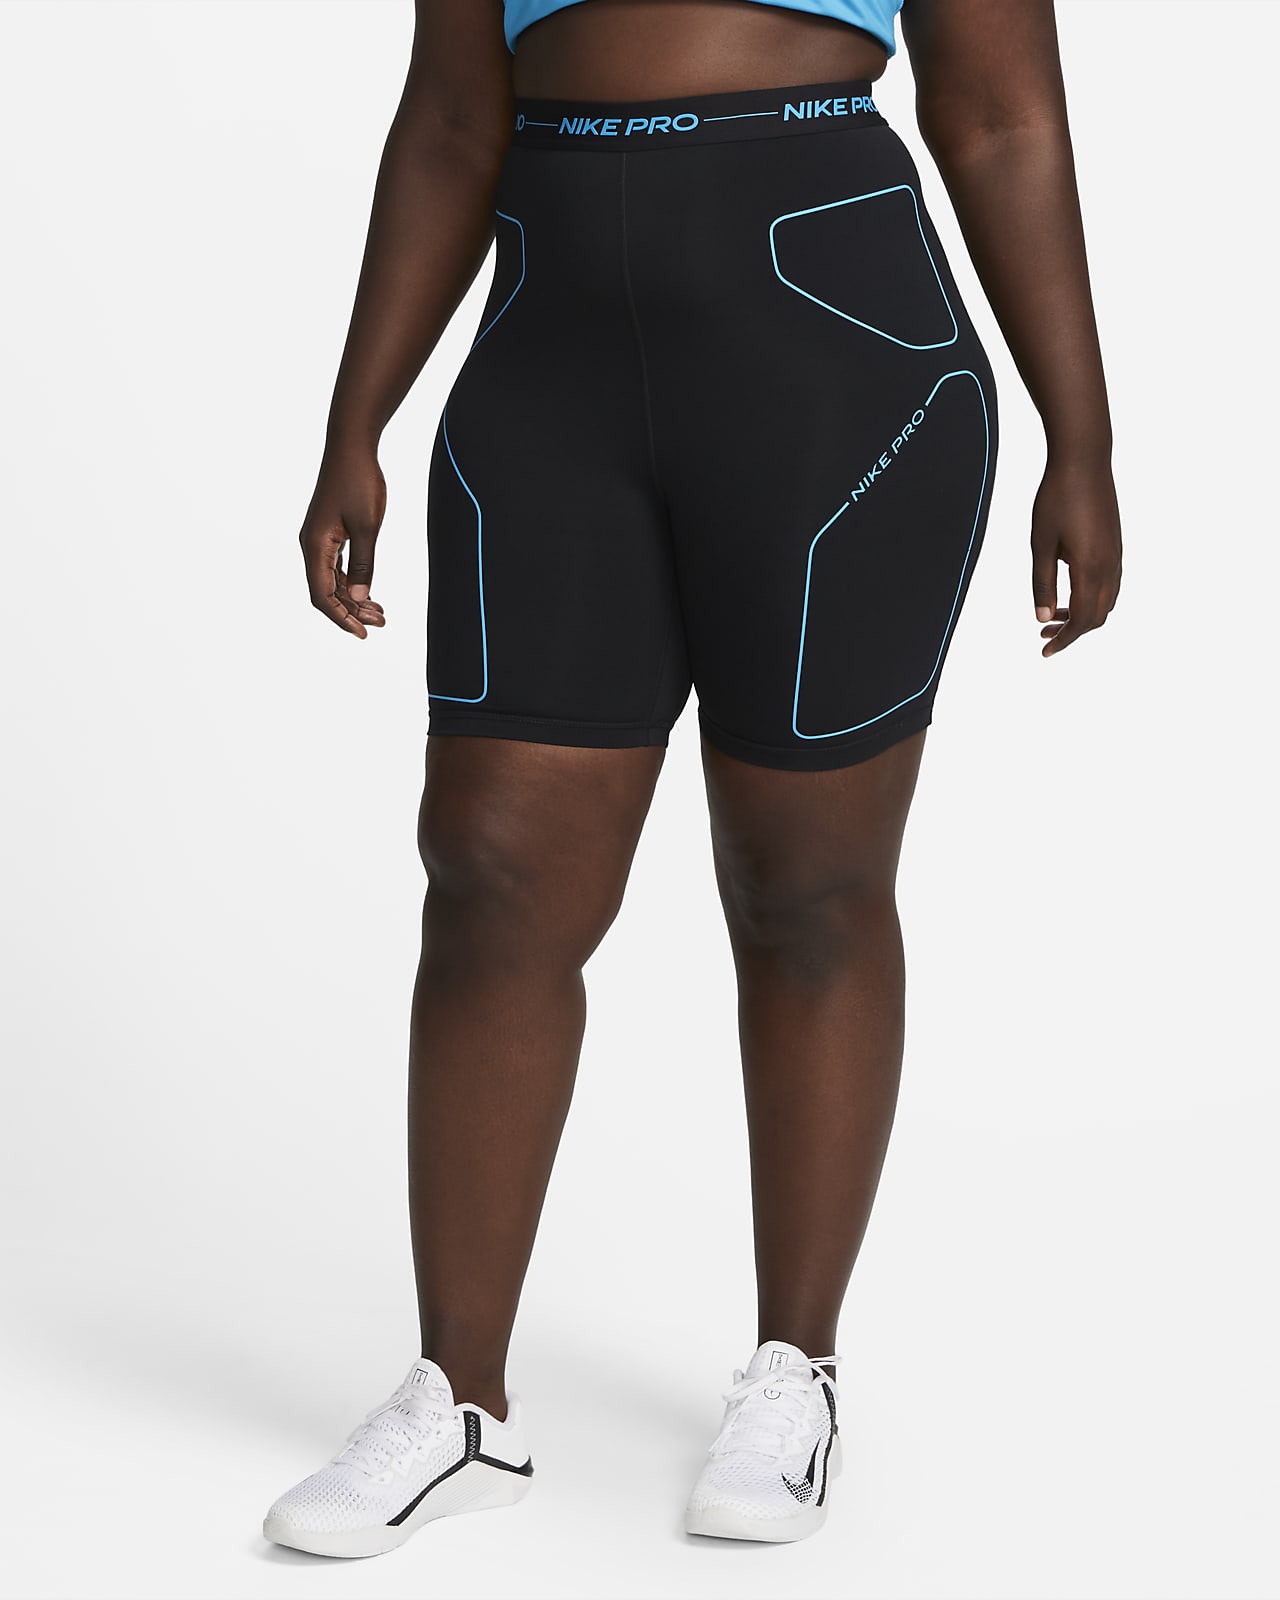 Nike Pro 7" Training Shorts (Plus Size).